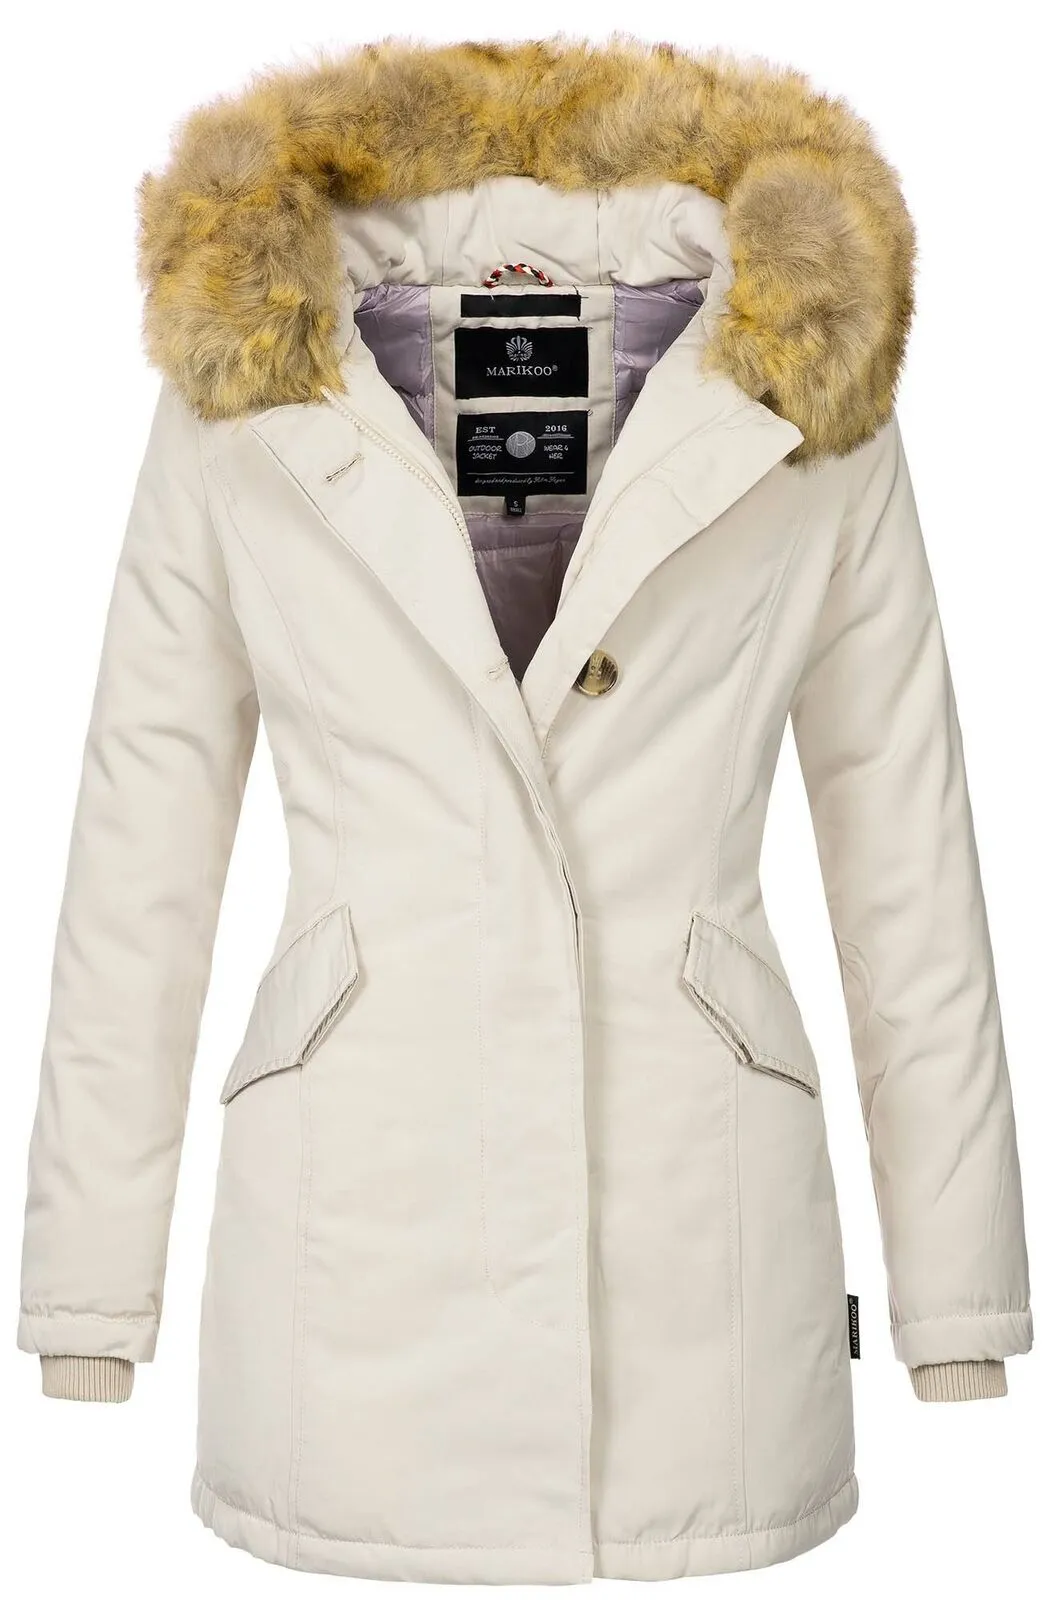 Ladies winter jacket coat coat winter jacket warm lining D